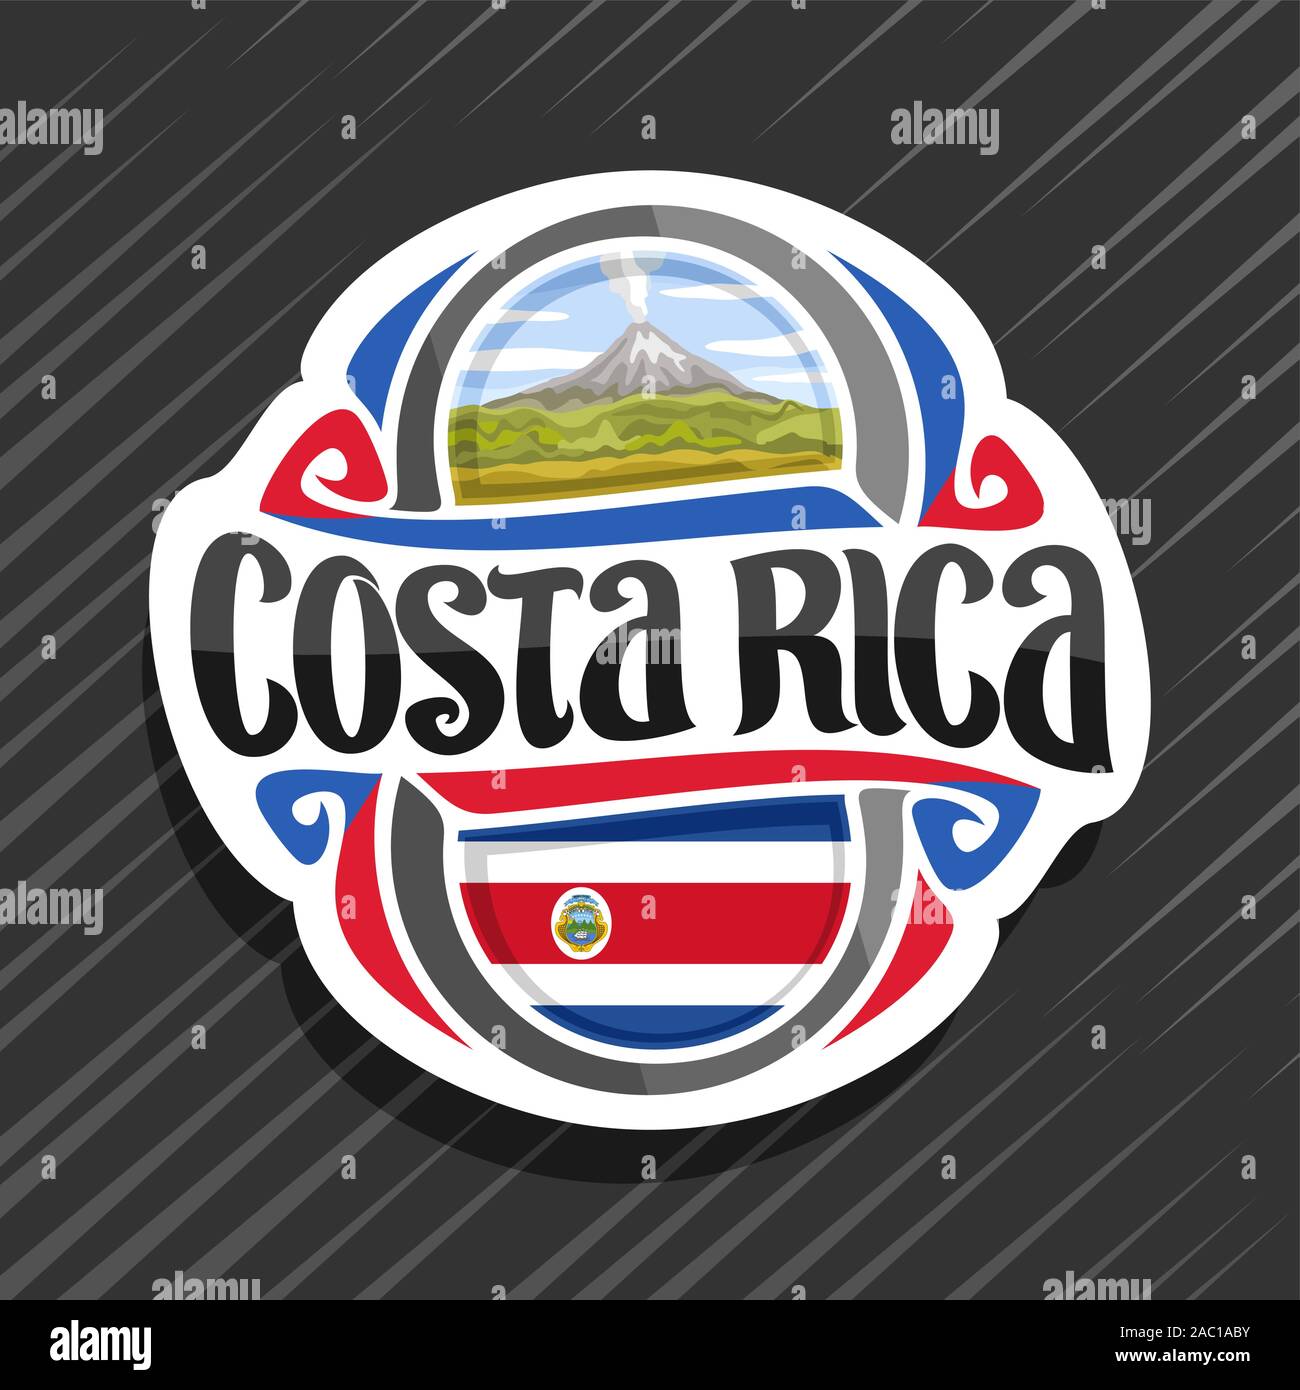 Vektor logo für Costa Rica Land, Kühlschrank Magnet mit State Flag, original brush Schrift für Worte costa rica und nationale Symbol wiederausbruchs Arenal Stock Vektor